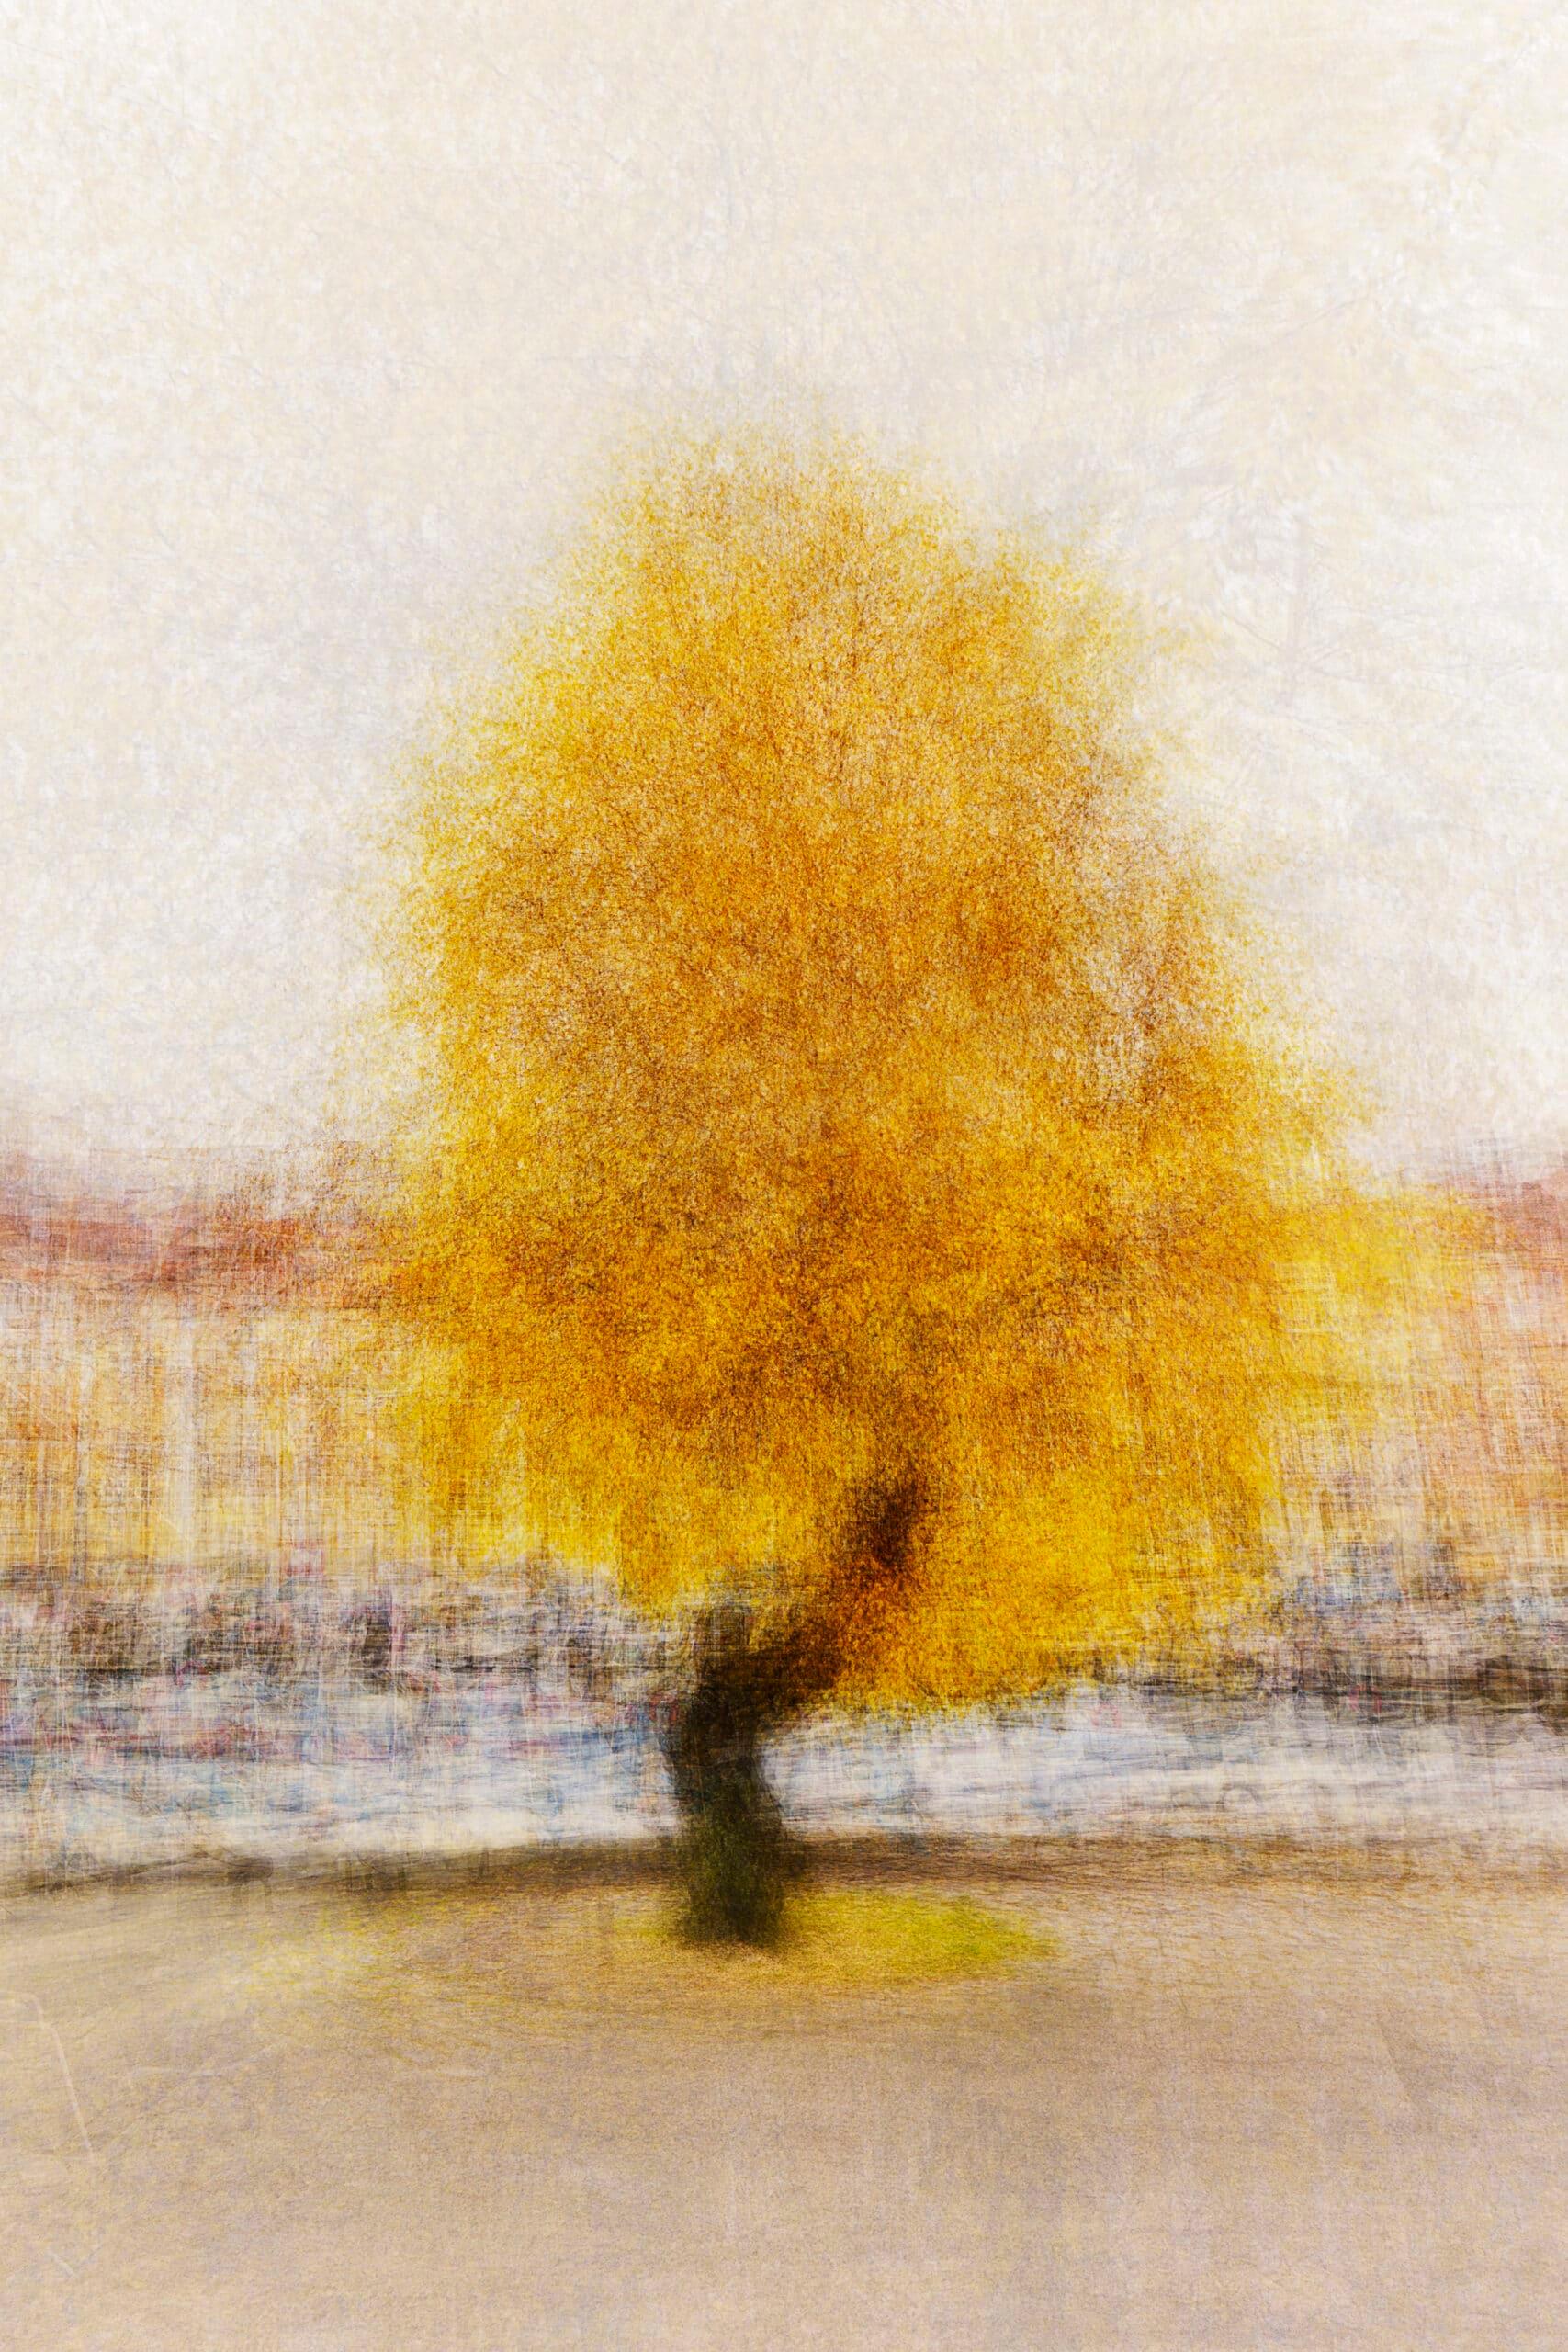 Jacob Gils Color Photograph - Copenhagen #25 - Contemporary Landscape Photography - Tree